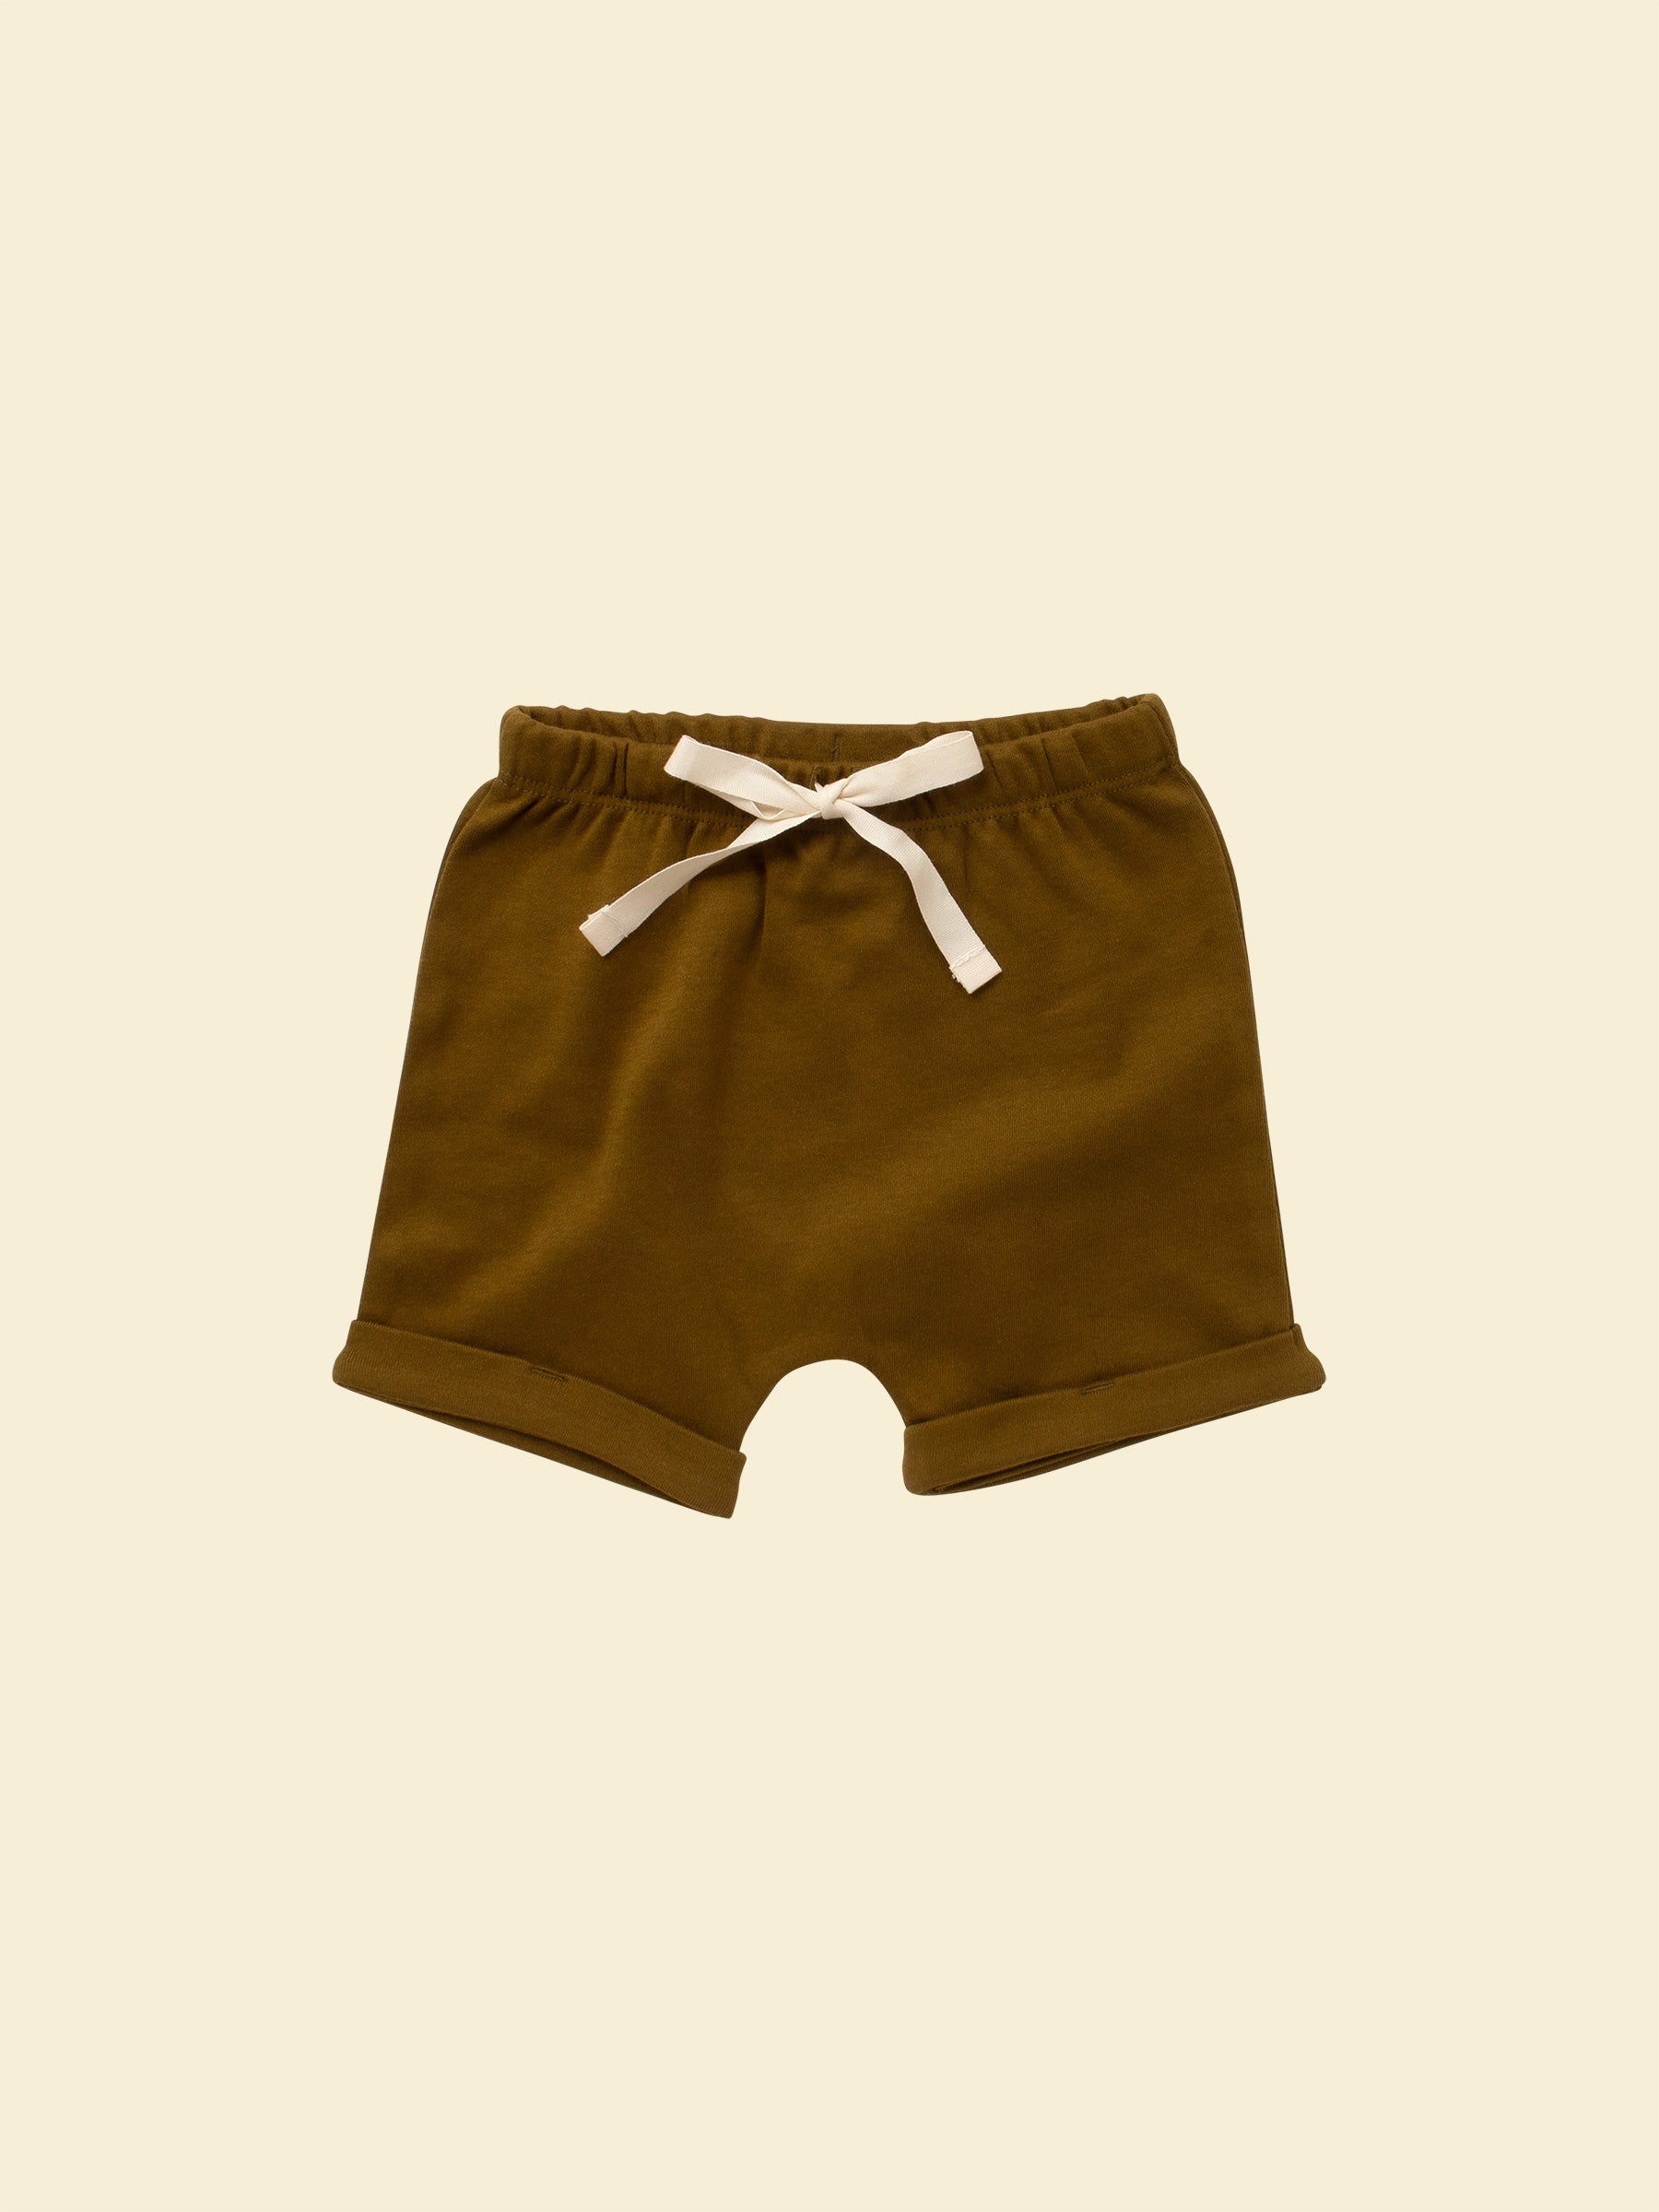 Gender Neutral Shorts - Olive (front)